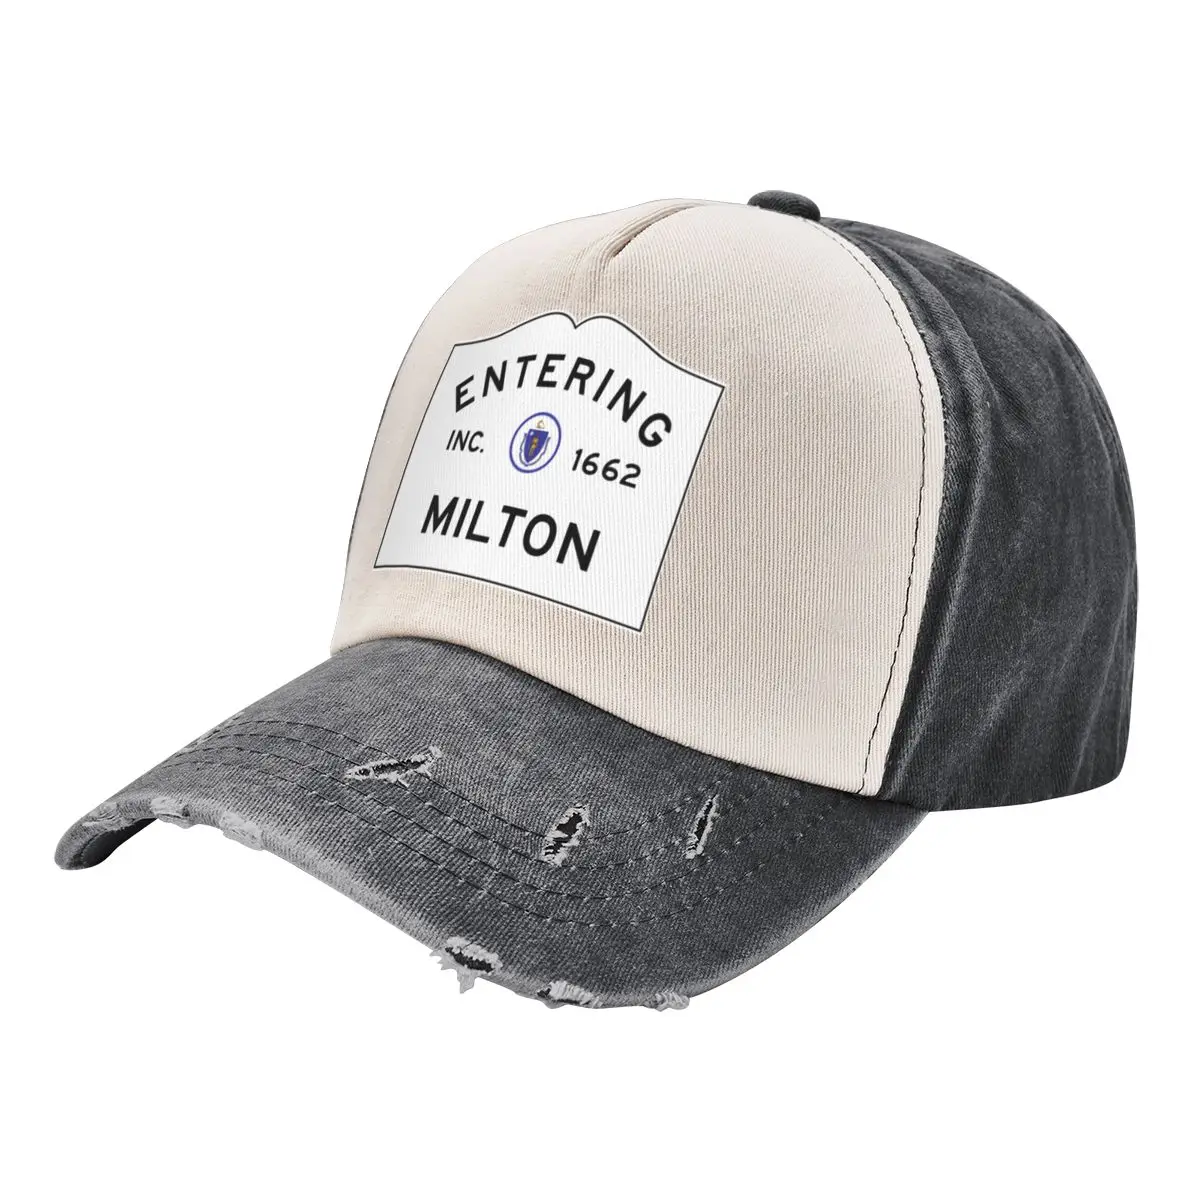 

Entering Milton Massachusetts - Commonwealth of Massachusetts Road SignCap Baseball Cap Trucker Hat sun hat Caps Women Men's